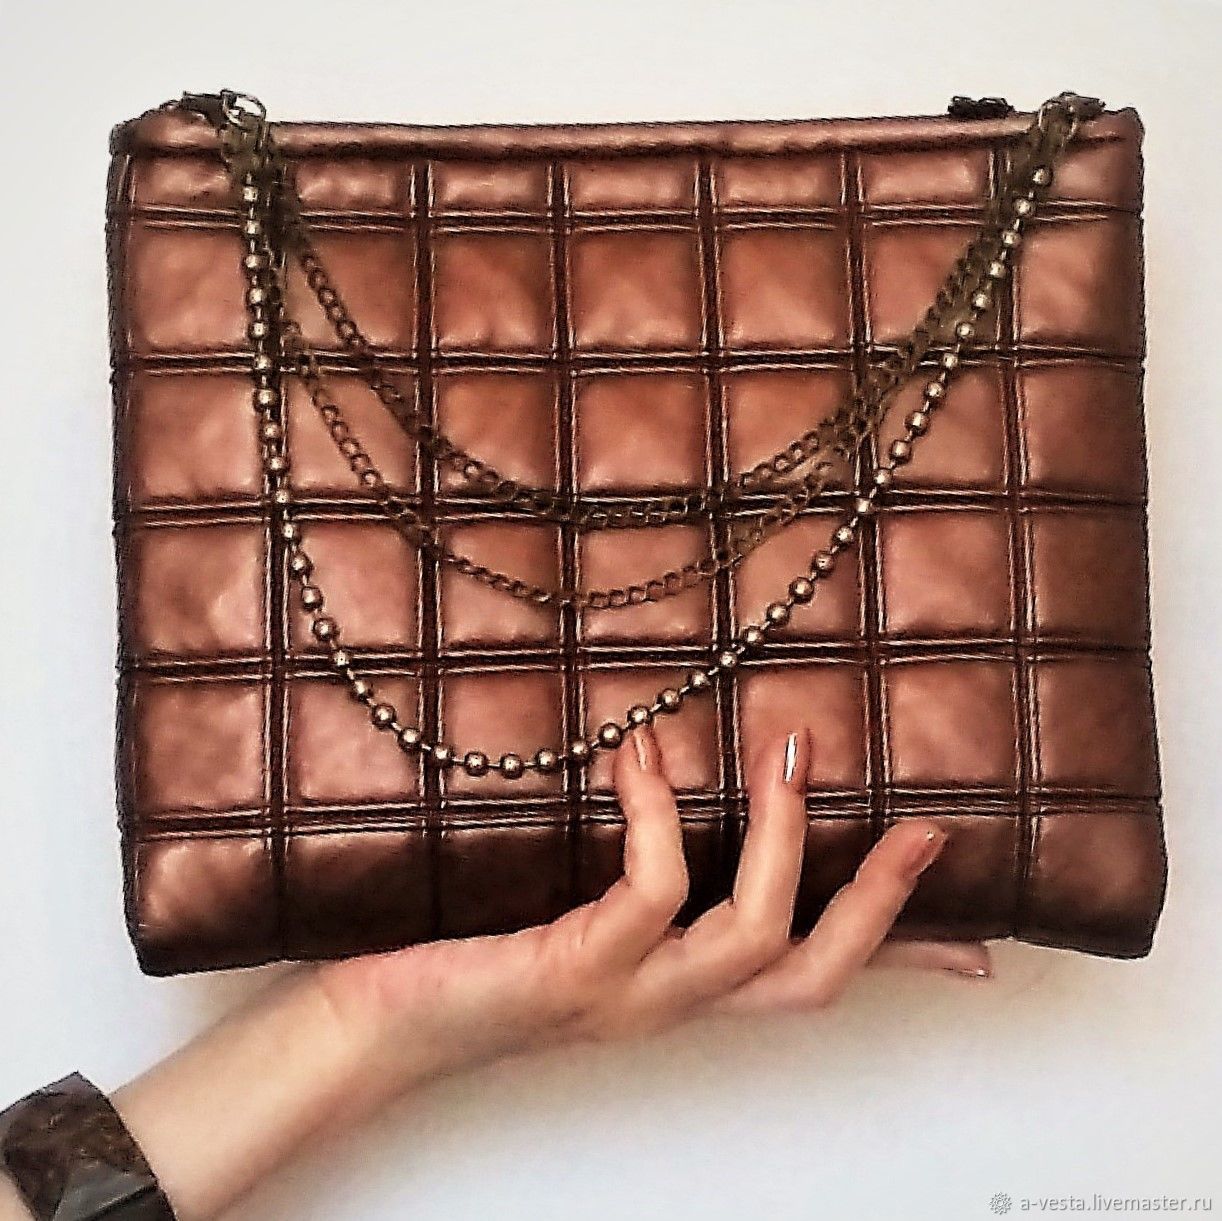 Сумка шоколад купить в интернет. Сумка шоколад лот 748821. Кожаная сумка шоколадного цвета лот 748821. Шоколадная сумочка. Шоколадный клатч.